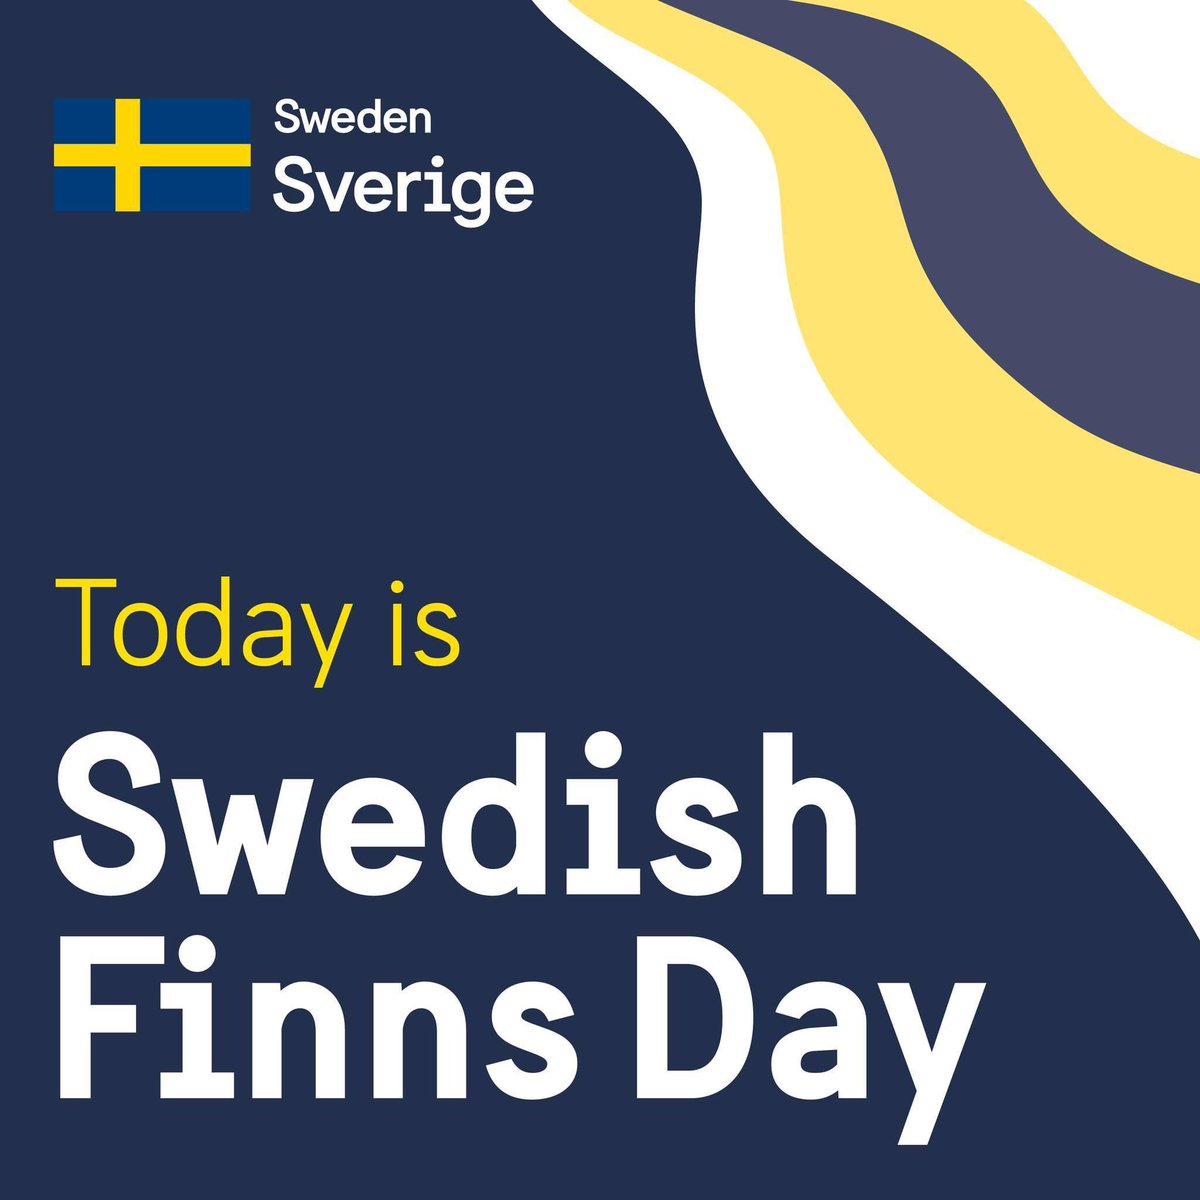 ¡Feliz Día de los Finlandeses Suecos! Los finlandeses suecos son la minoría nacional más numerosa de Suecia. La cultura y el idioma finlandeses son una parte importante de la identidad de muchas personas como finlandeses suecos. #sverigefinnar #ruotsinsuomalaiset